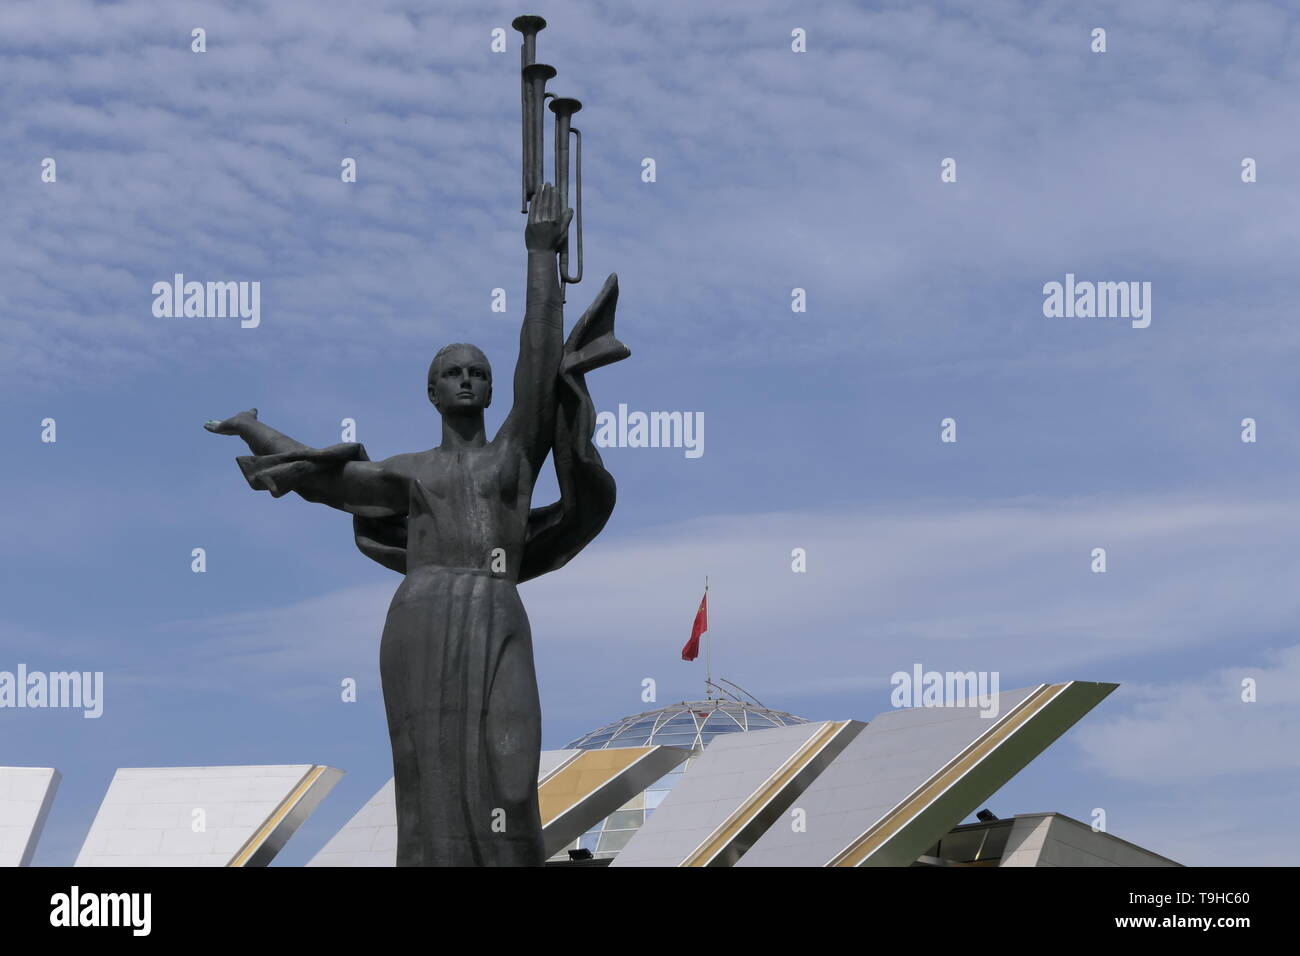 Musée de la guerre à Minsk, en raison de la mère patrie de sculpture, Bélarus Banque D'Images